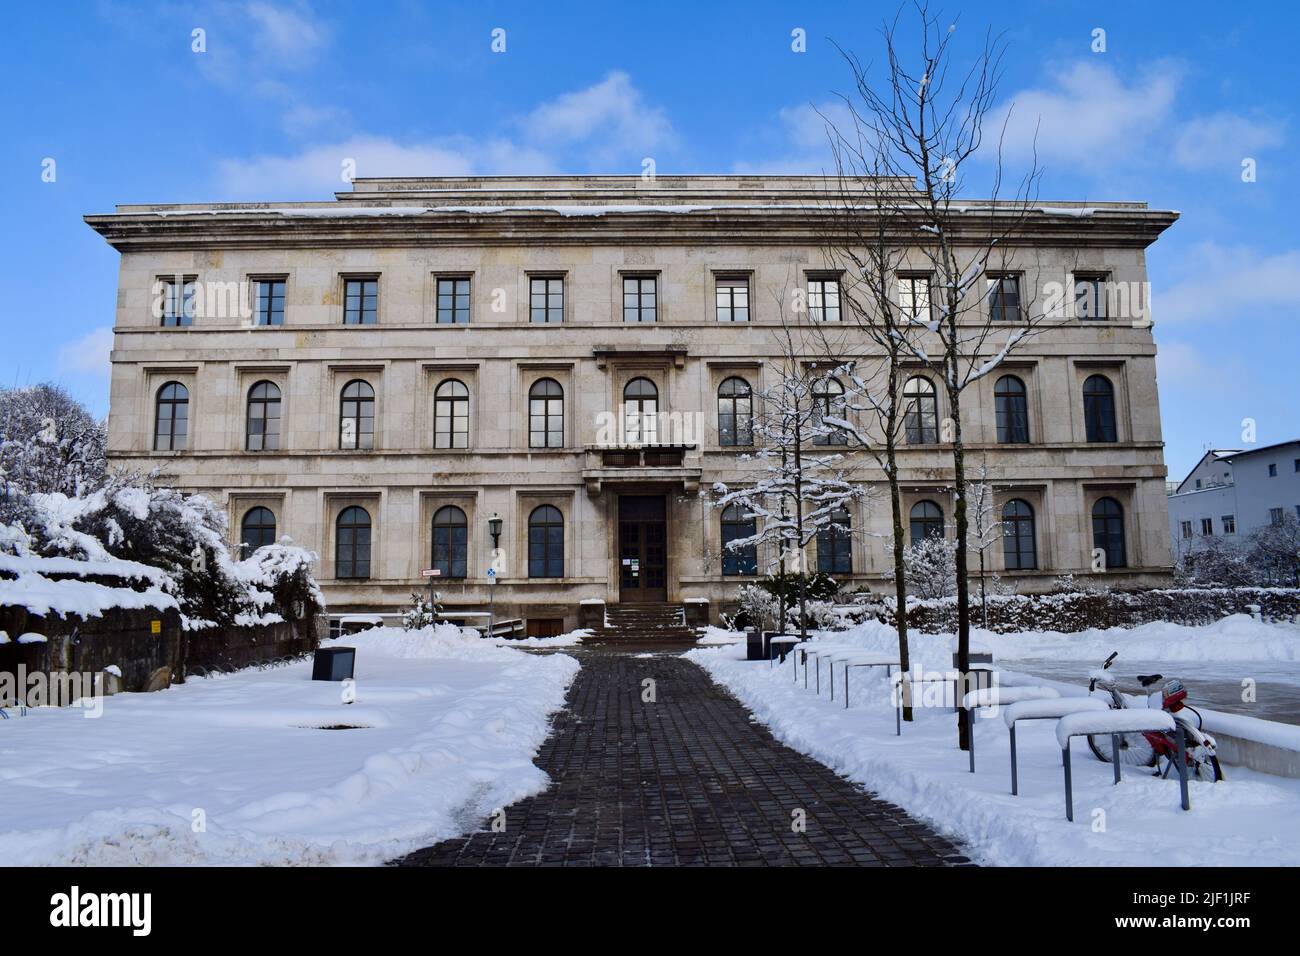 The Munchner Haus der Kulturinstitute in winter in Munich, Germany Stock Photo